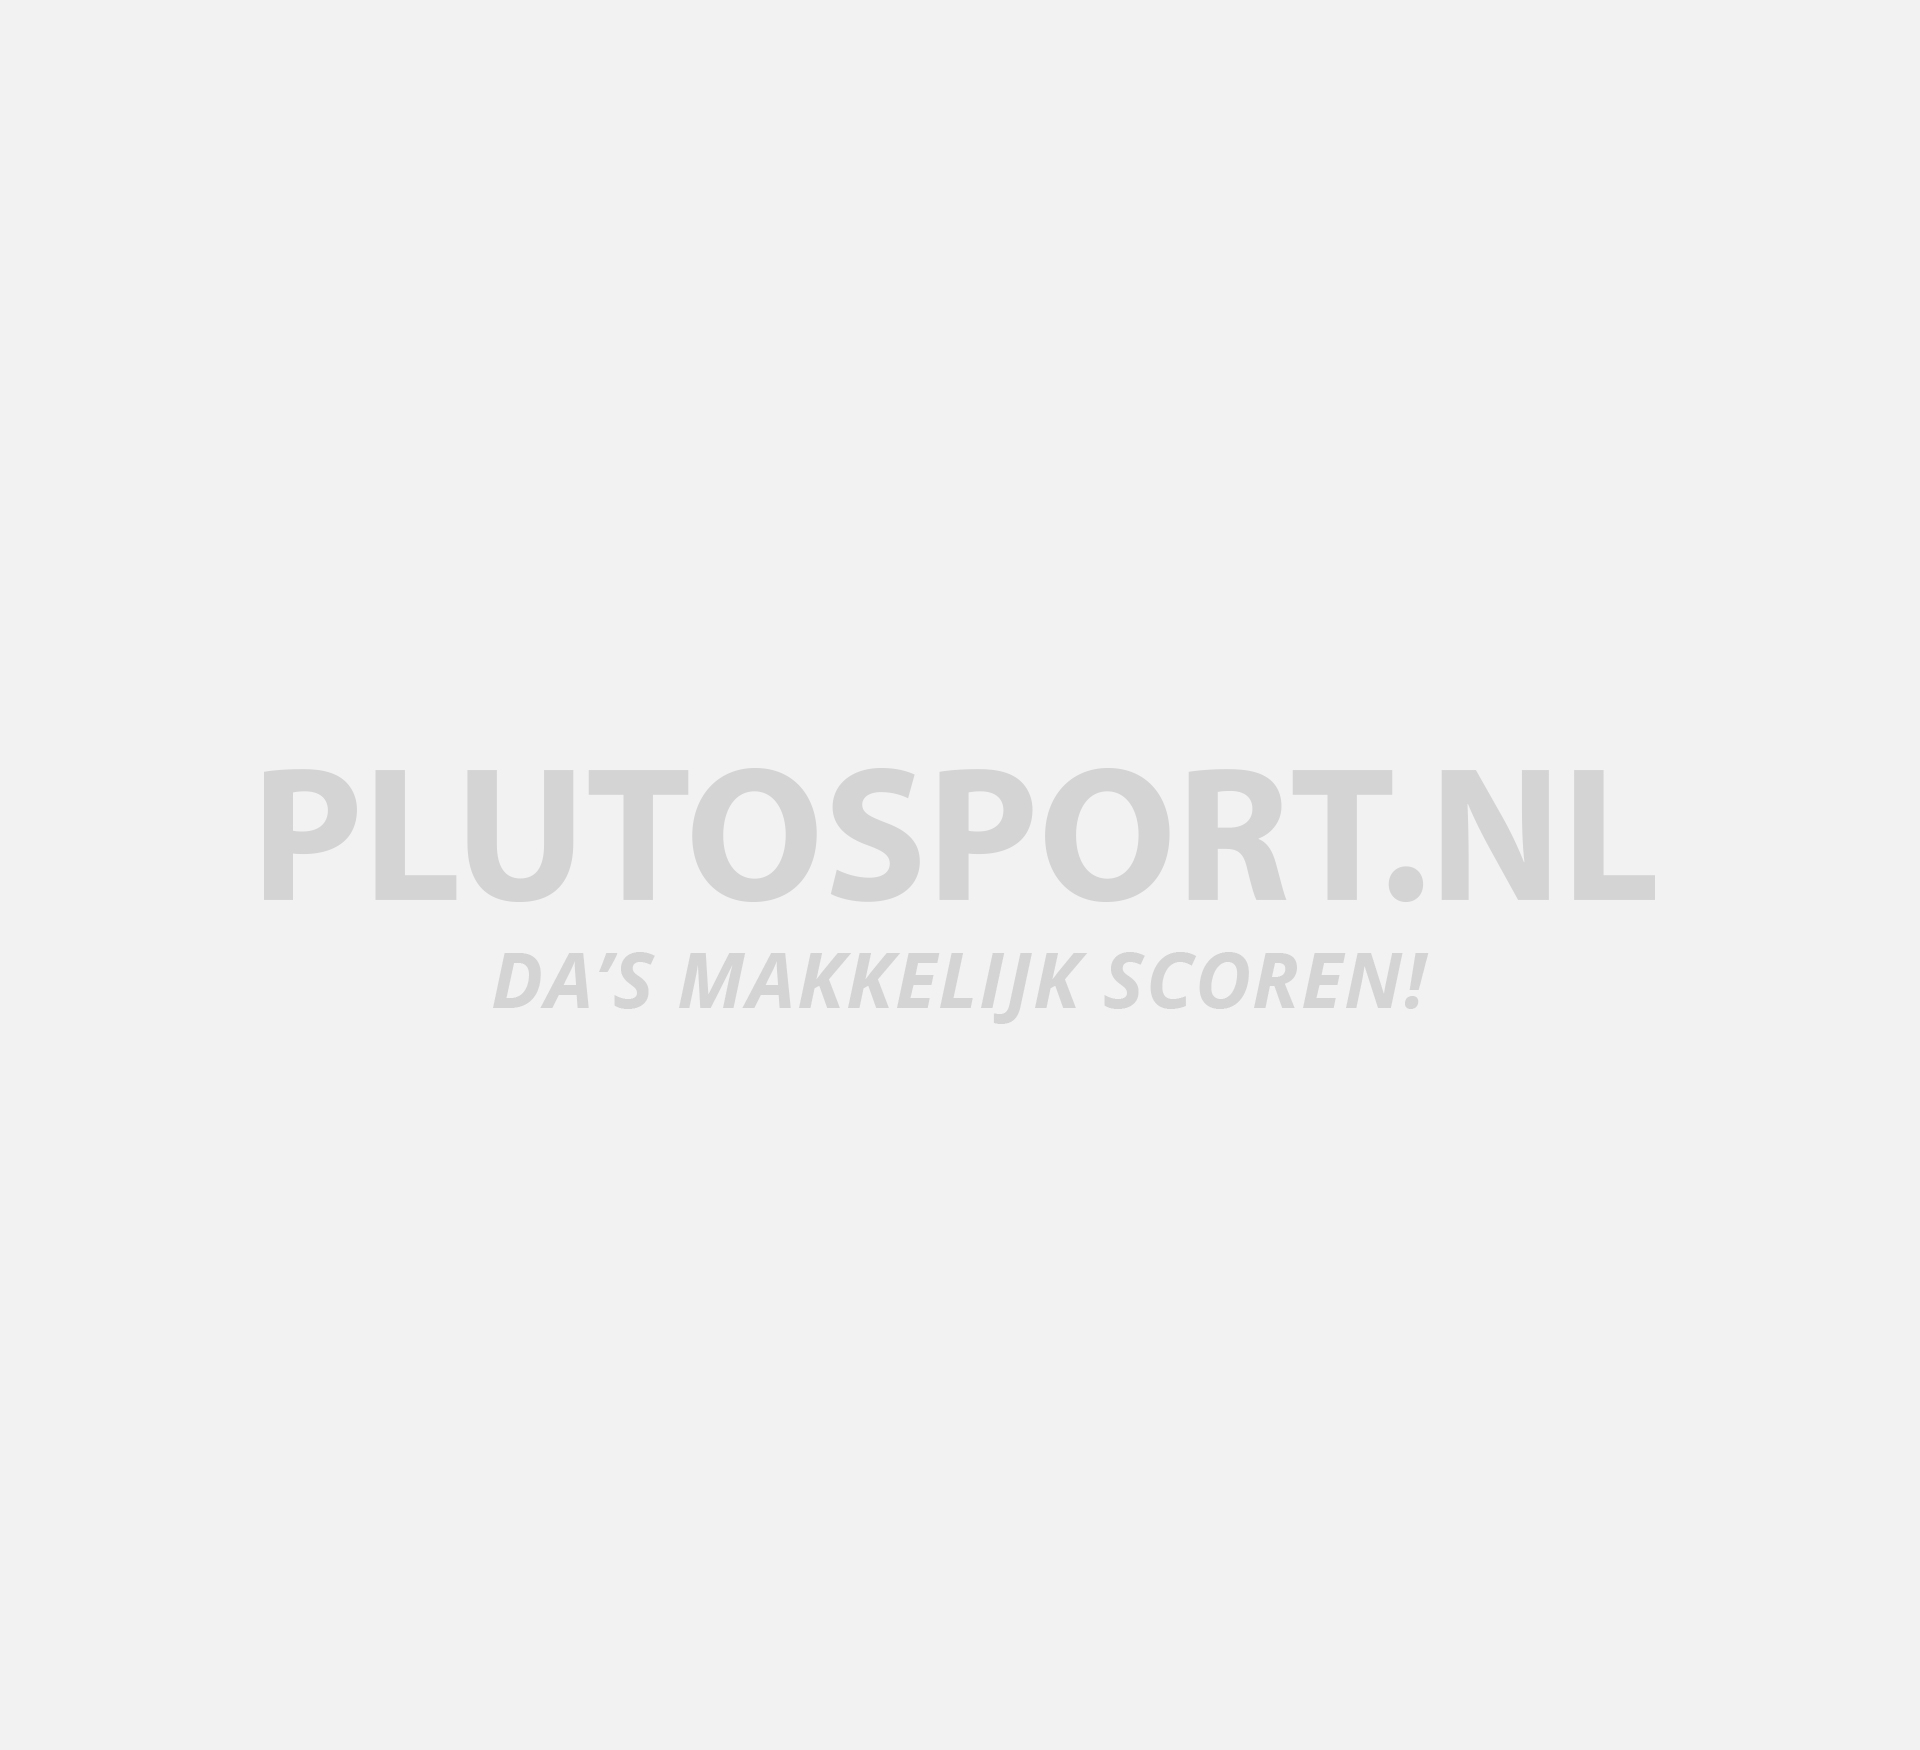 vlotter drempel Maladroit Champion - Merken | Plutosport